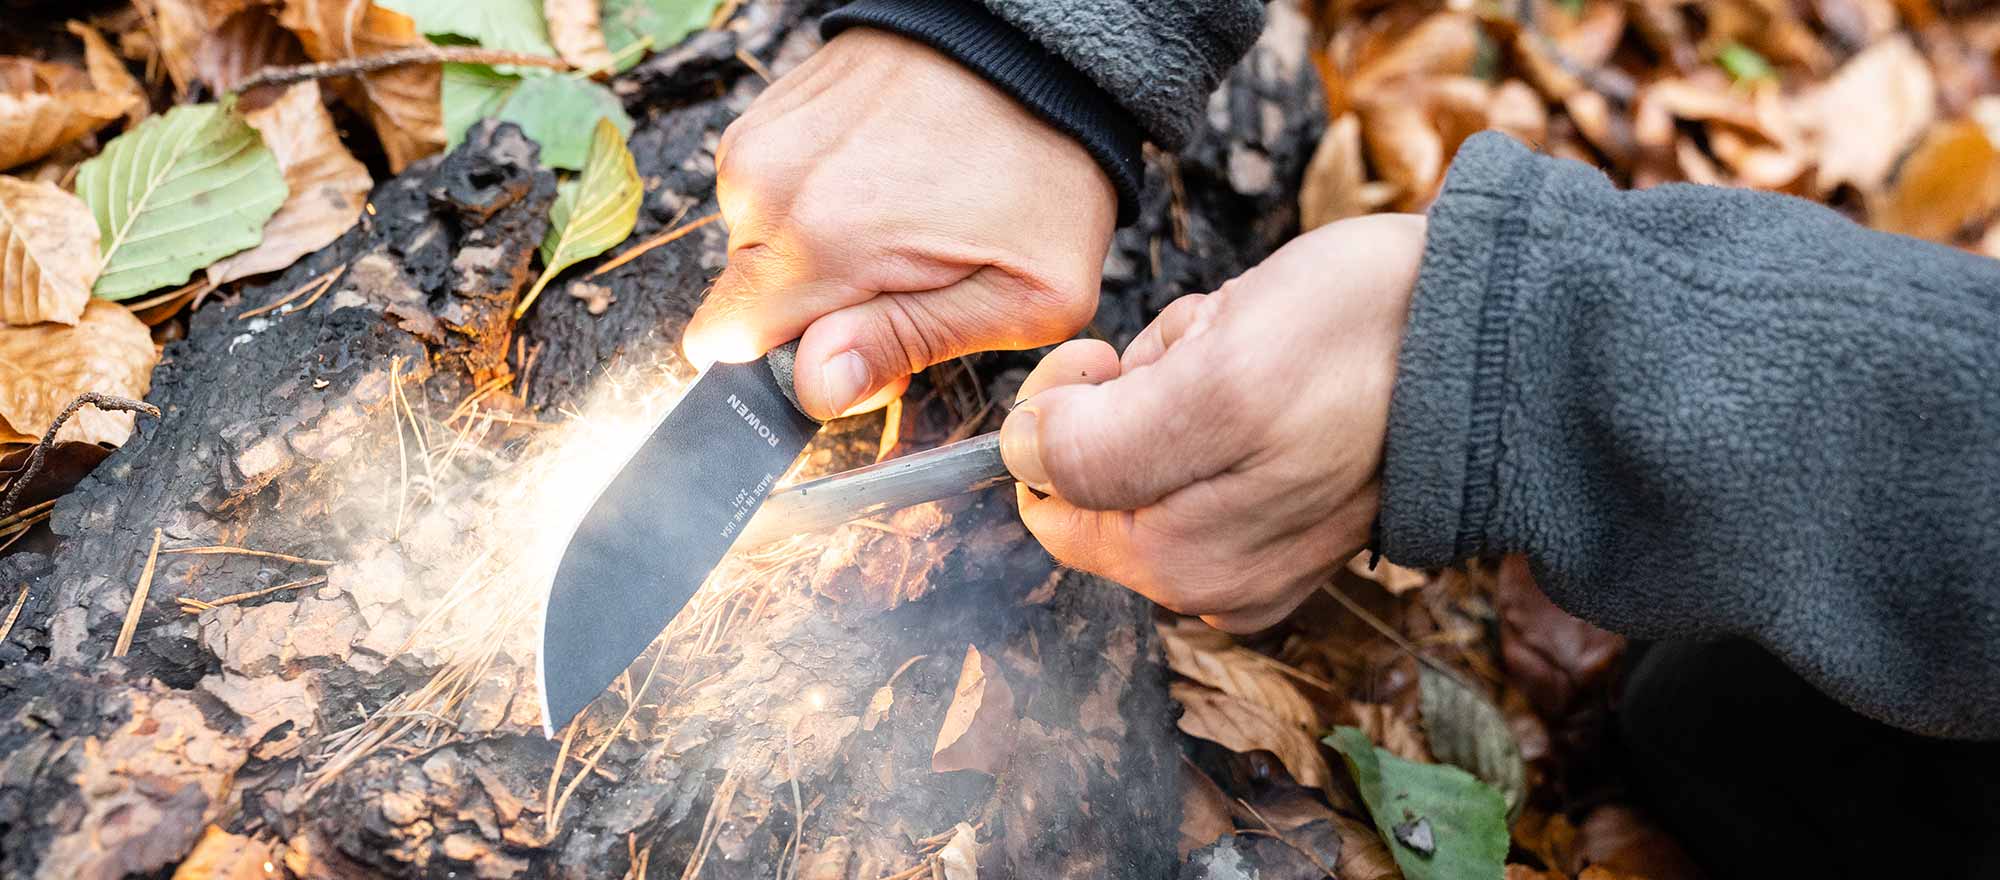 Mit dem besten Bushcraft Messer sowie Outdoormesser und einem Feuerstahl wird ein Stück Birkenrinde entfacht.